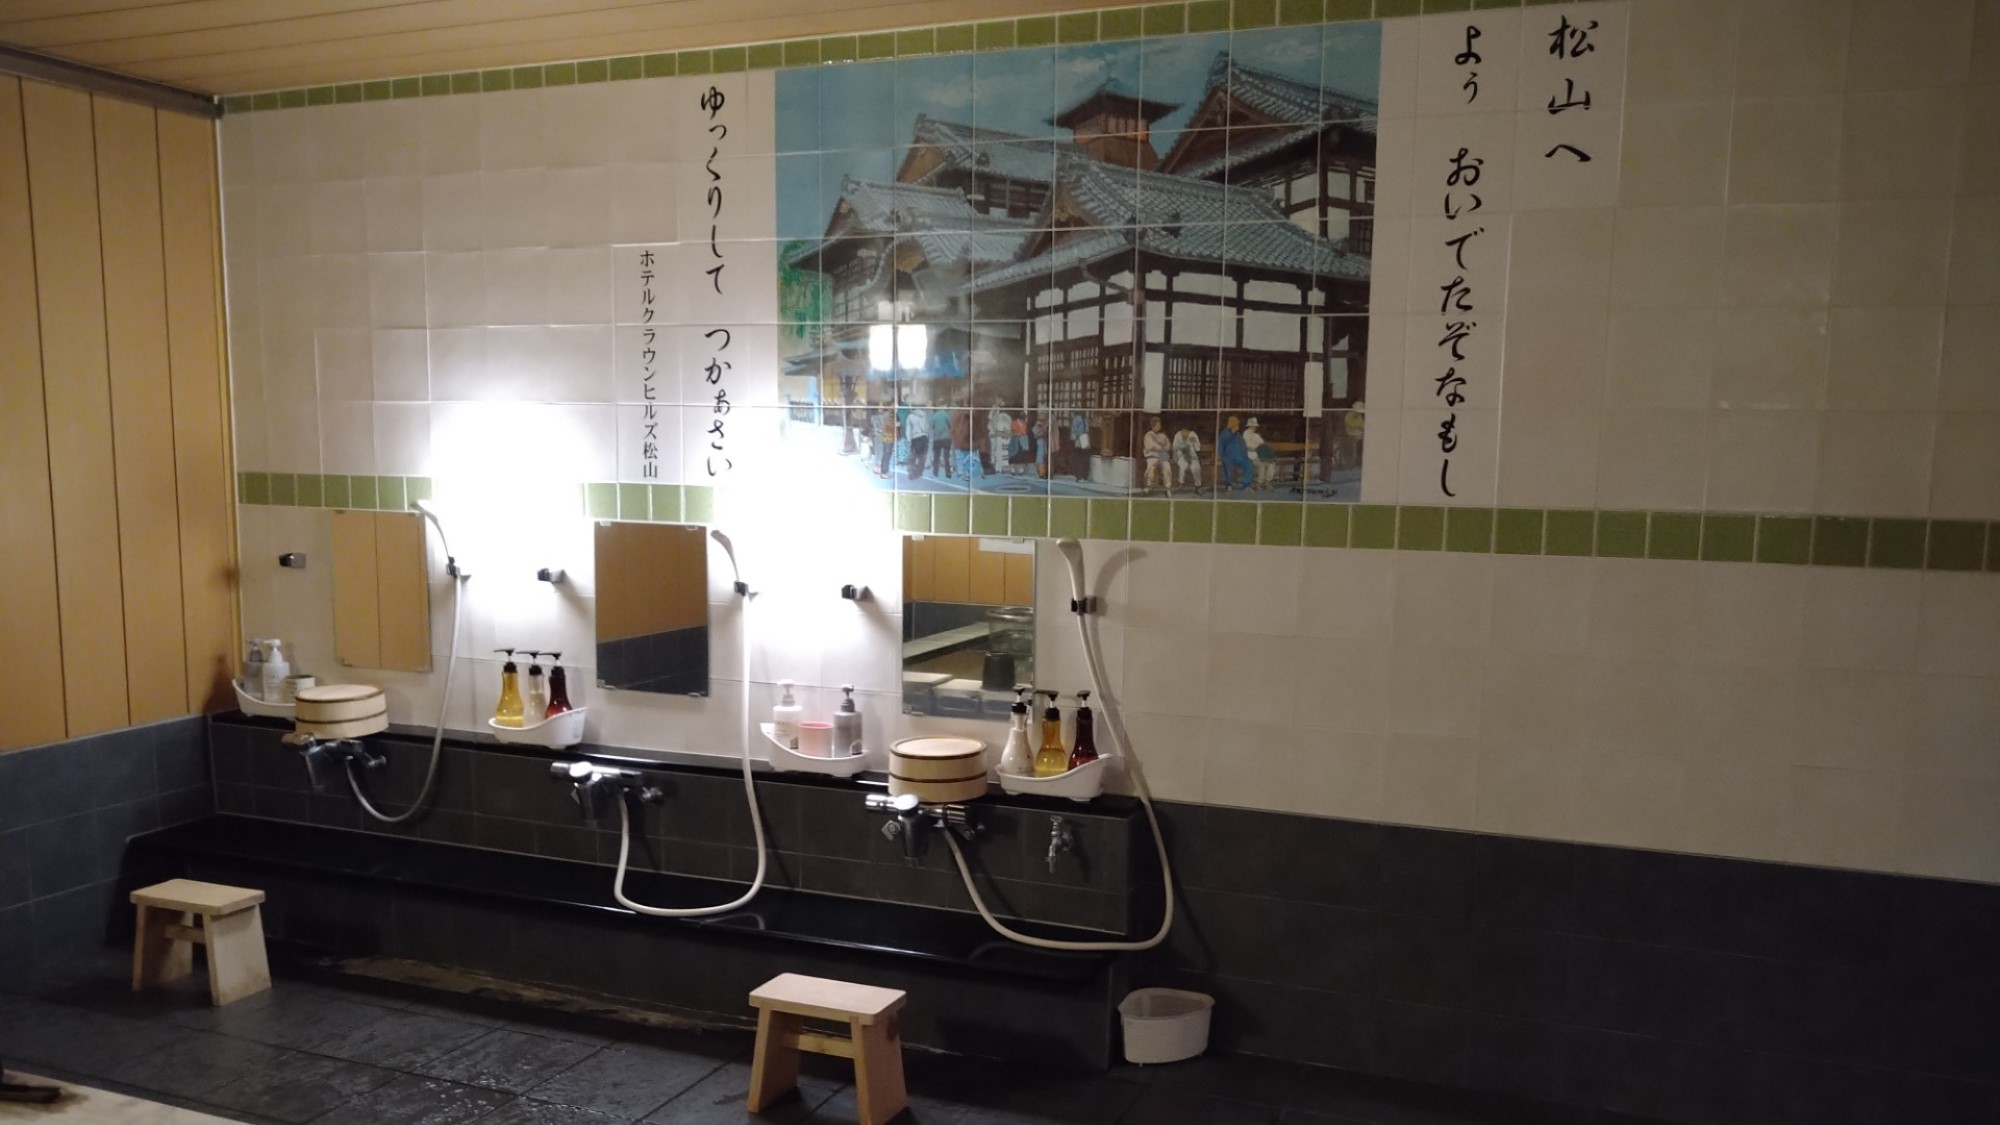 【女性浴場洗い場】コンパクト3か所の洗い場